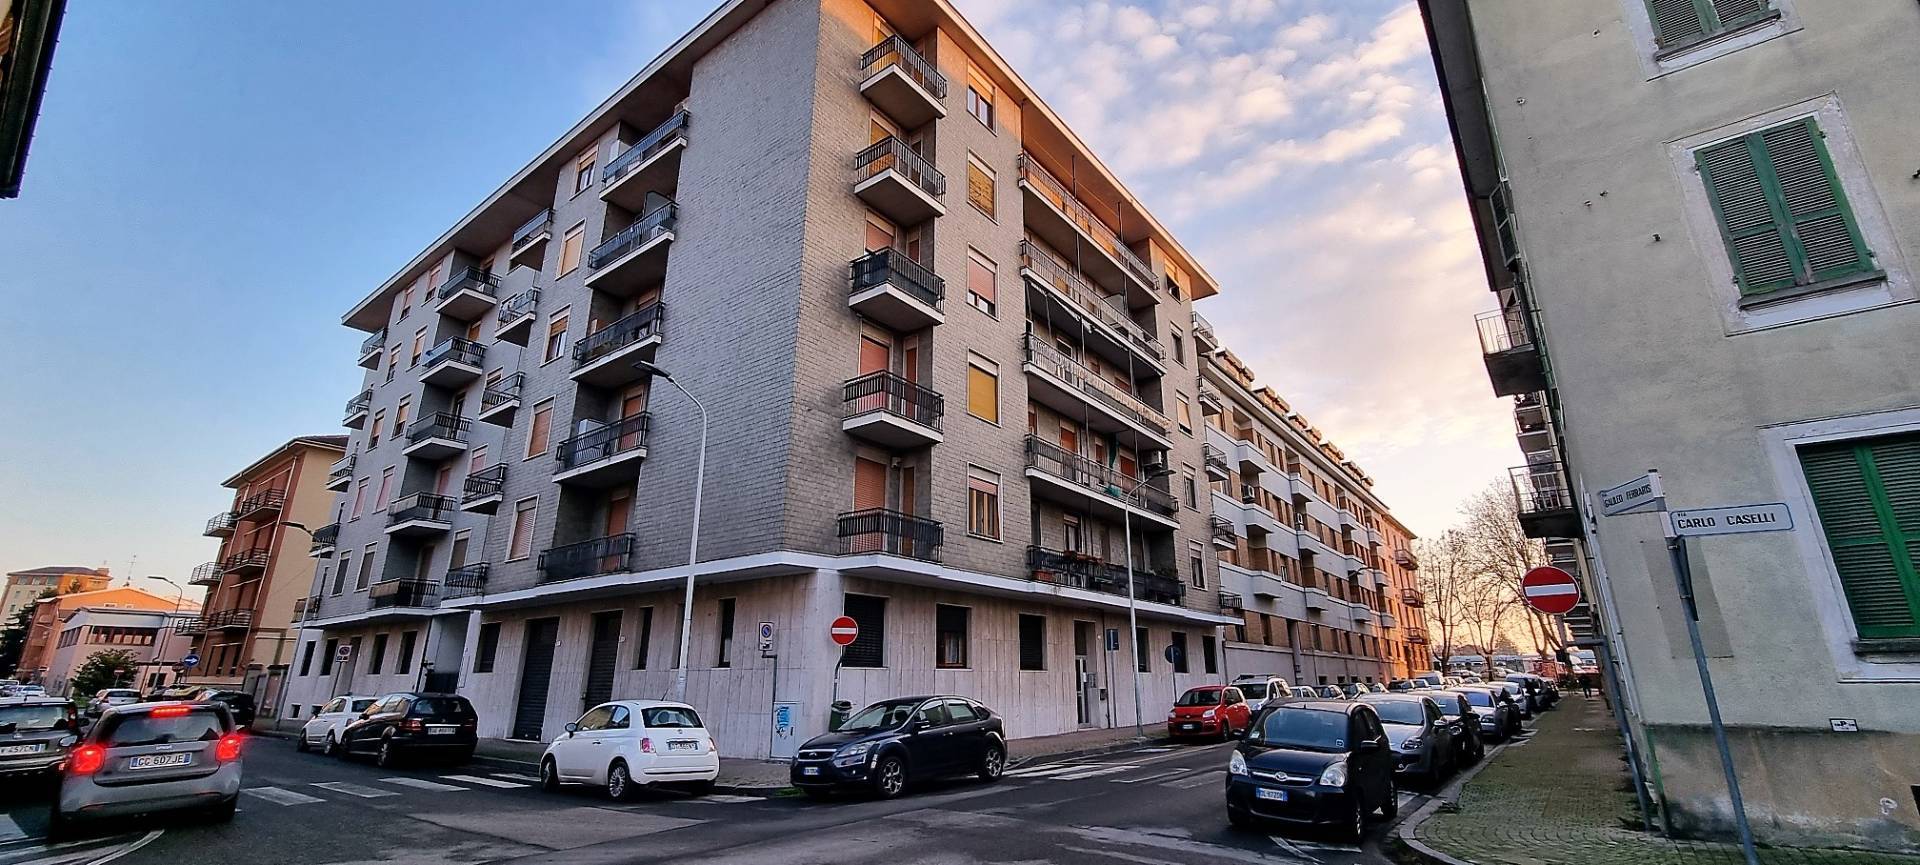 Appartamento in vendita a Alessandria, 3 locali, zona Località: Piscina, prezzo € 57.000 | PortaleAgenzieImmobiliari.it